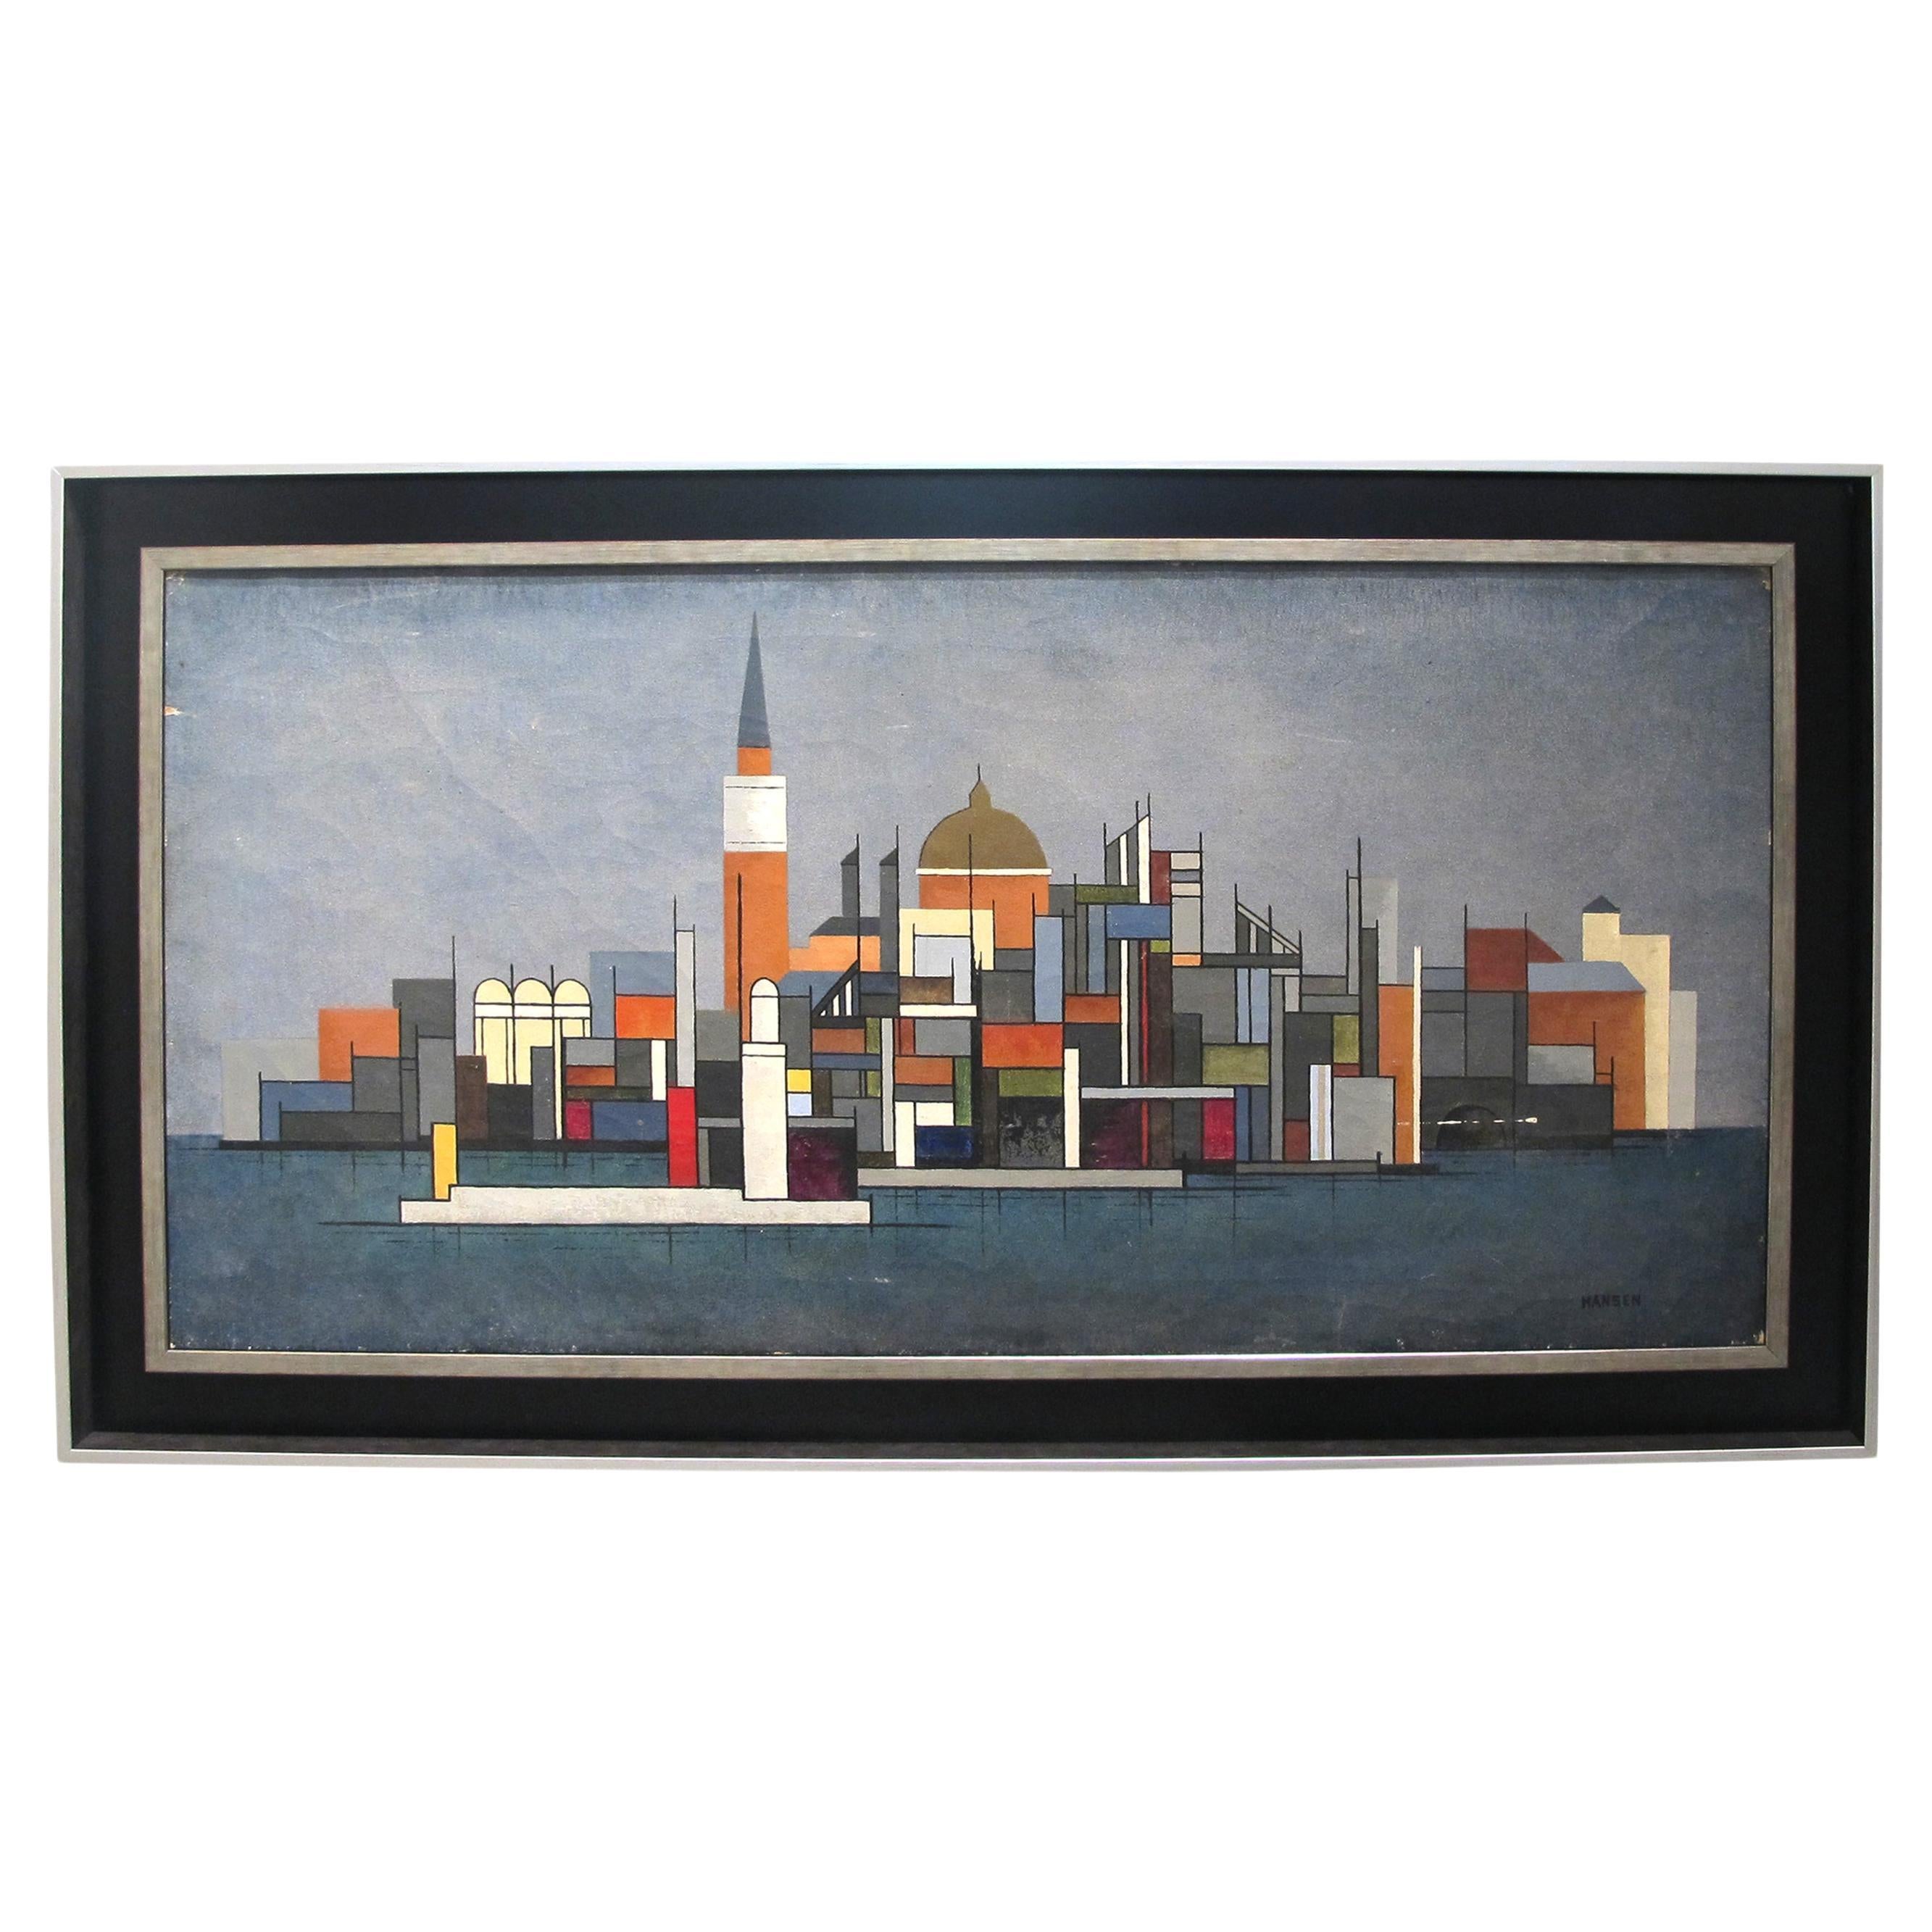 Huile sur toile colorée des années 1940 représentant un paysage urbain par Hansen, suédois